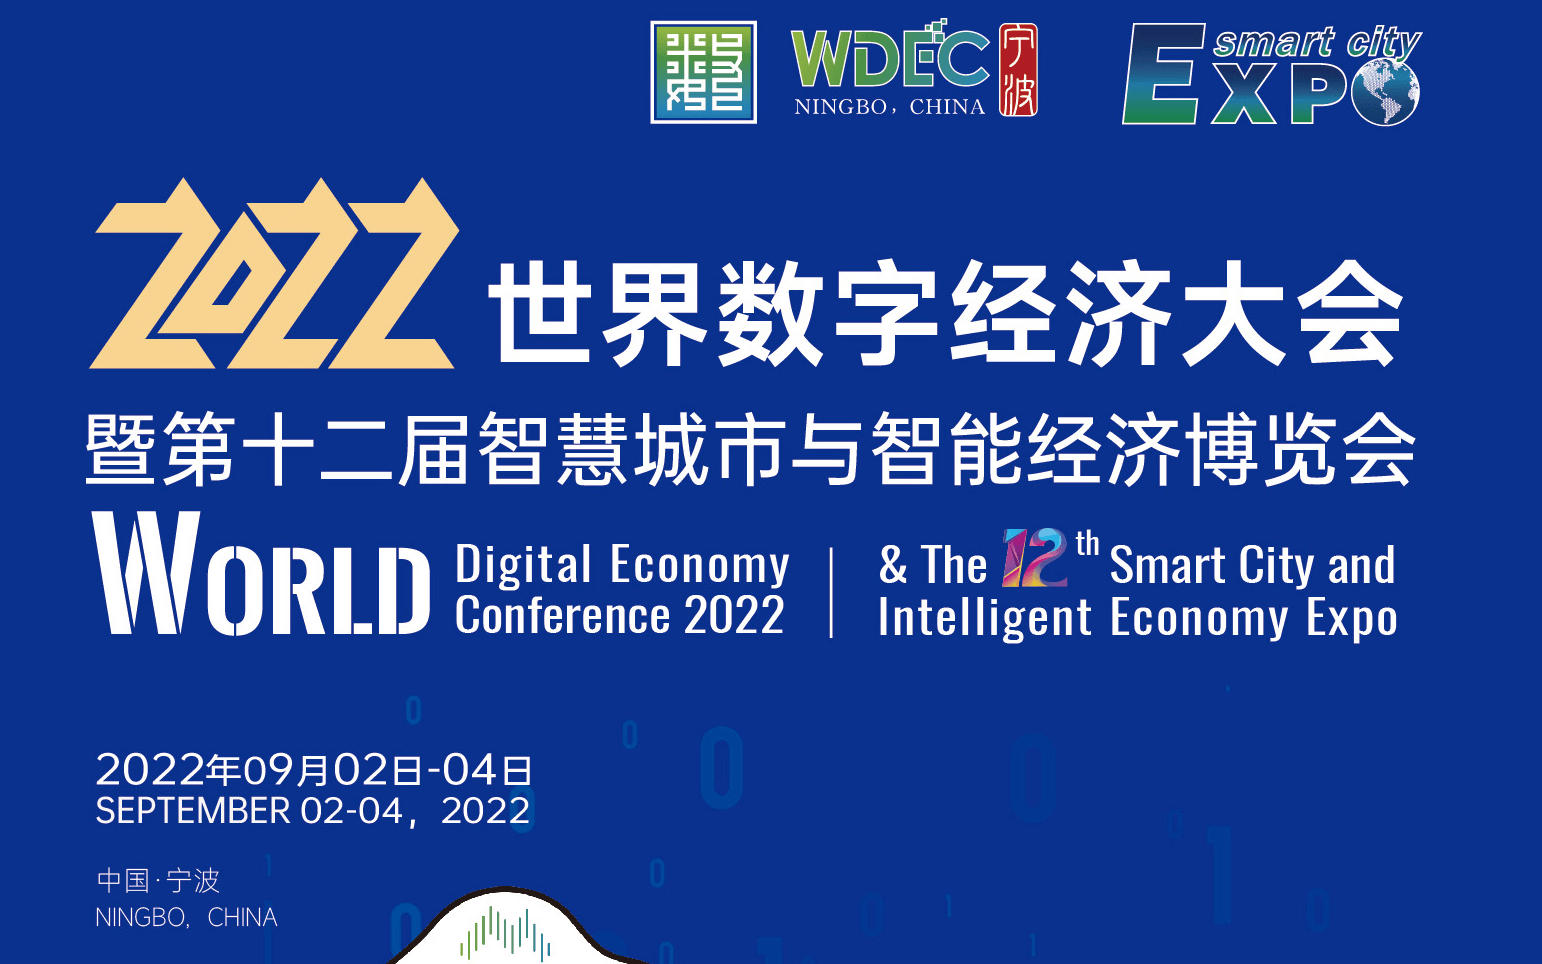 2022世界數字經濟大會 暨第十二屆智慧城市與智能經濟博覽會